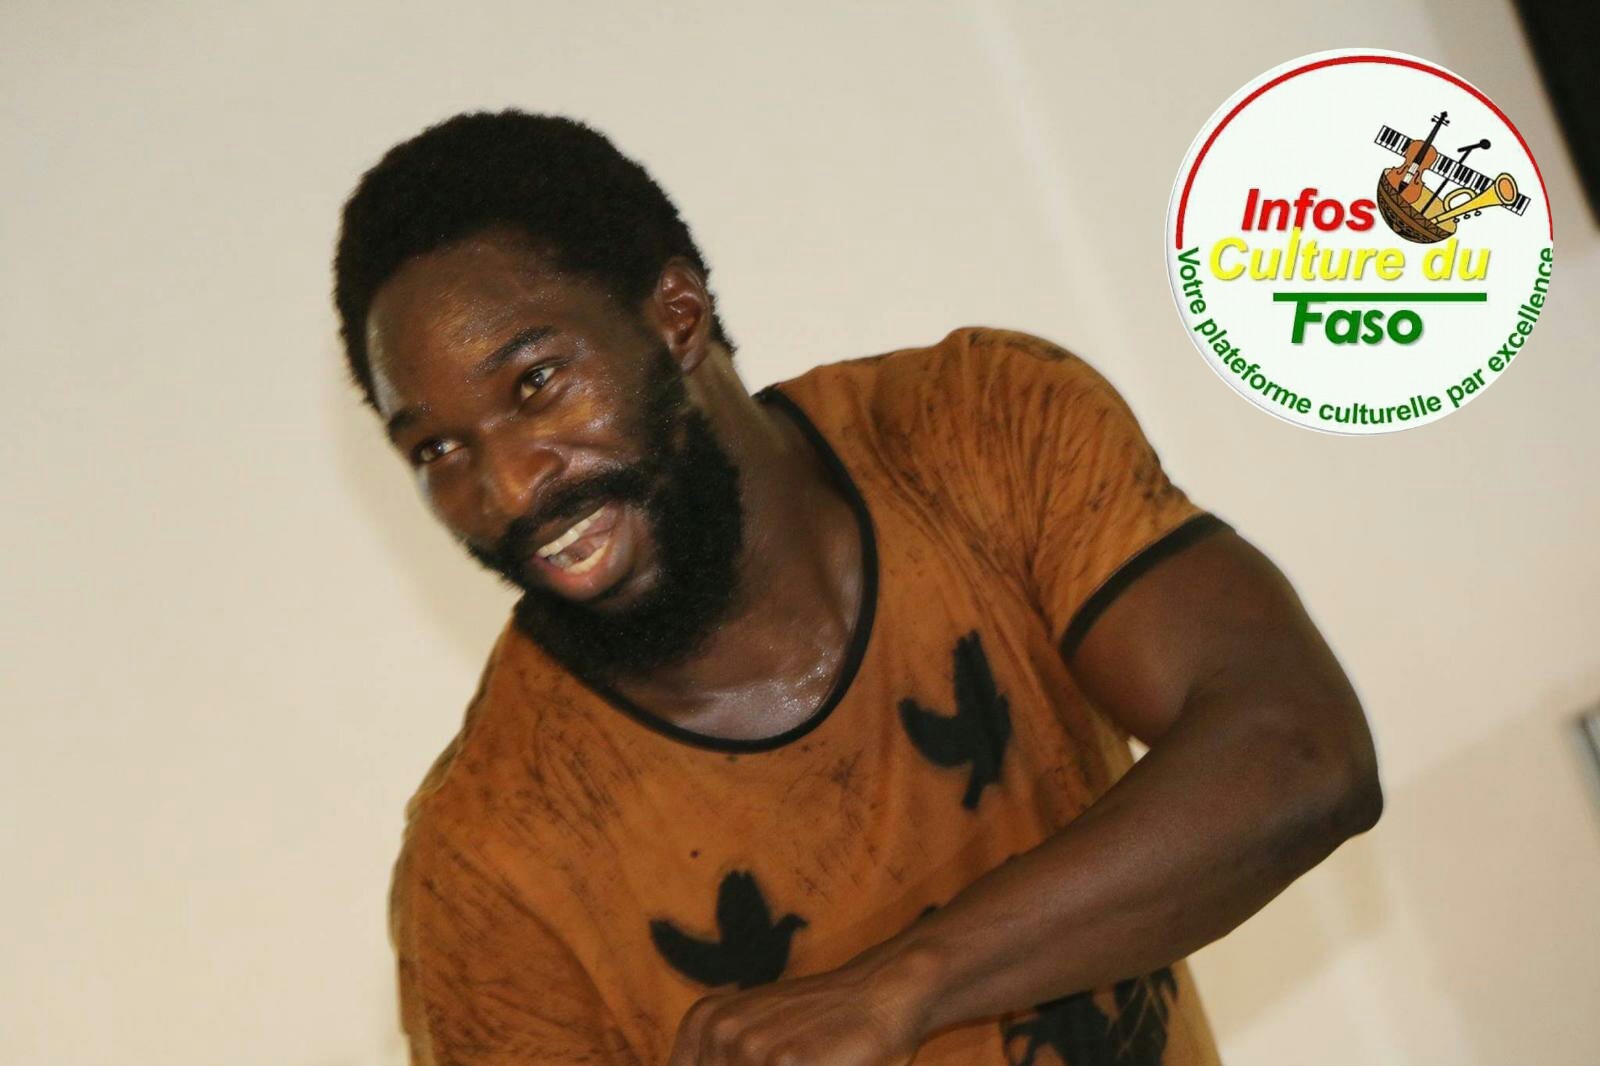  Les sentiments du chorégraphe, Issa Sanou sur les deux ans de “Infos Culture du Faso”